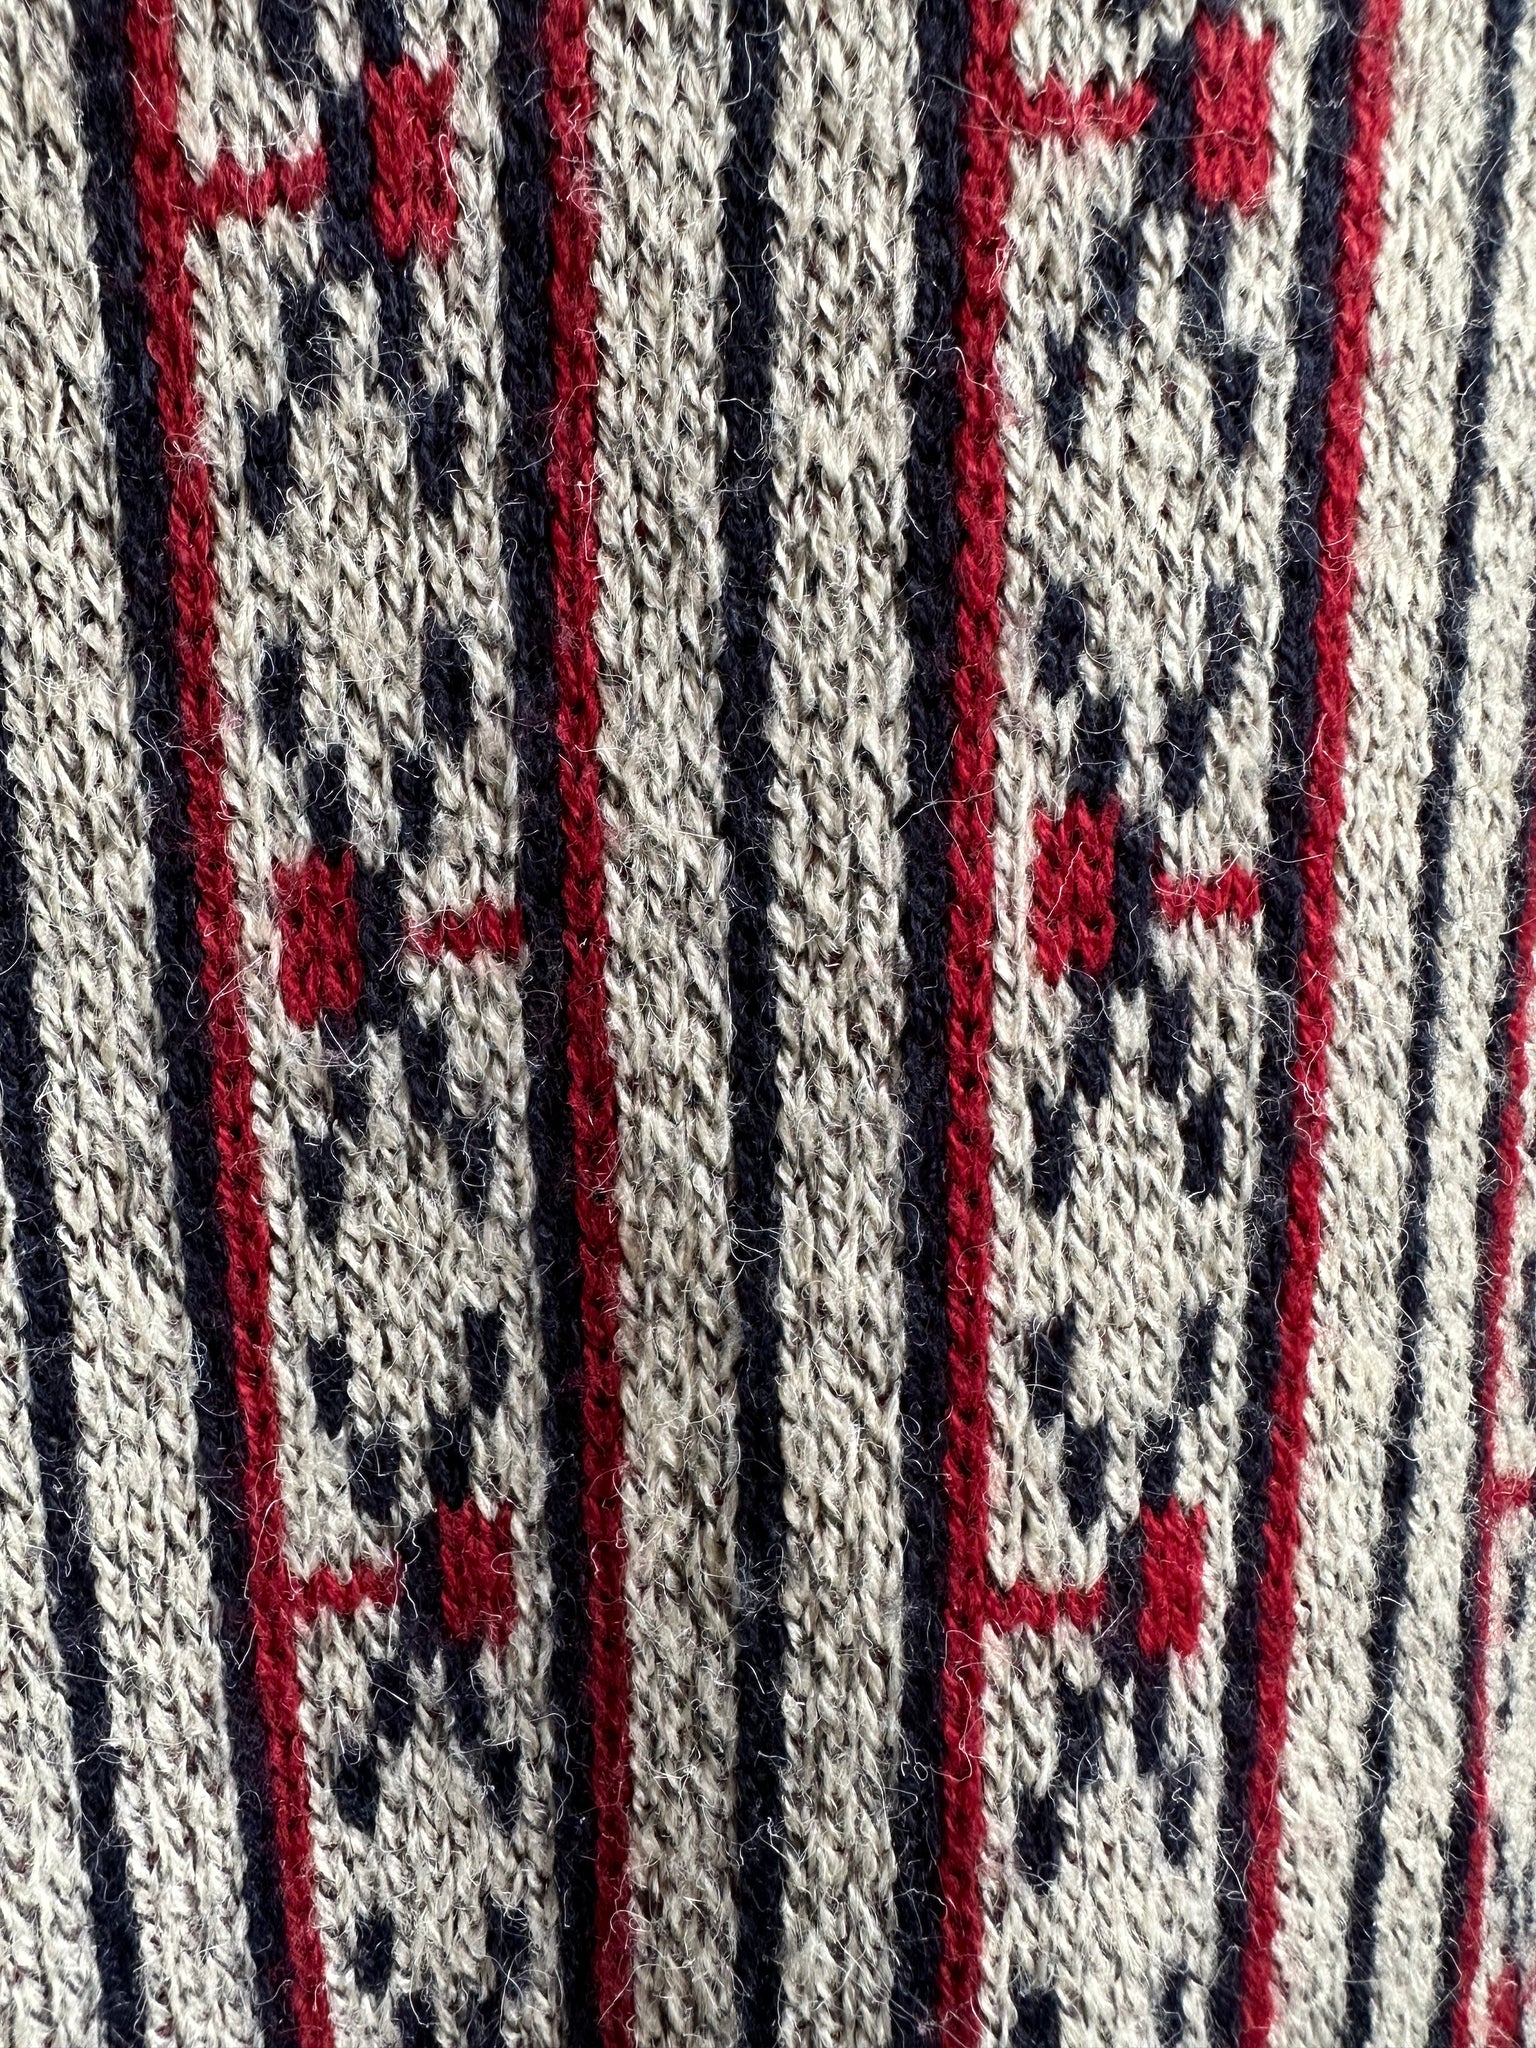 Vintage Boho Chic Fringe Cardigan Sweater